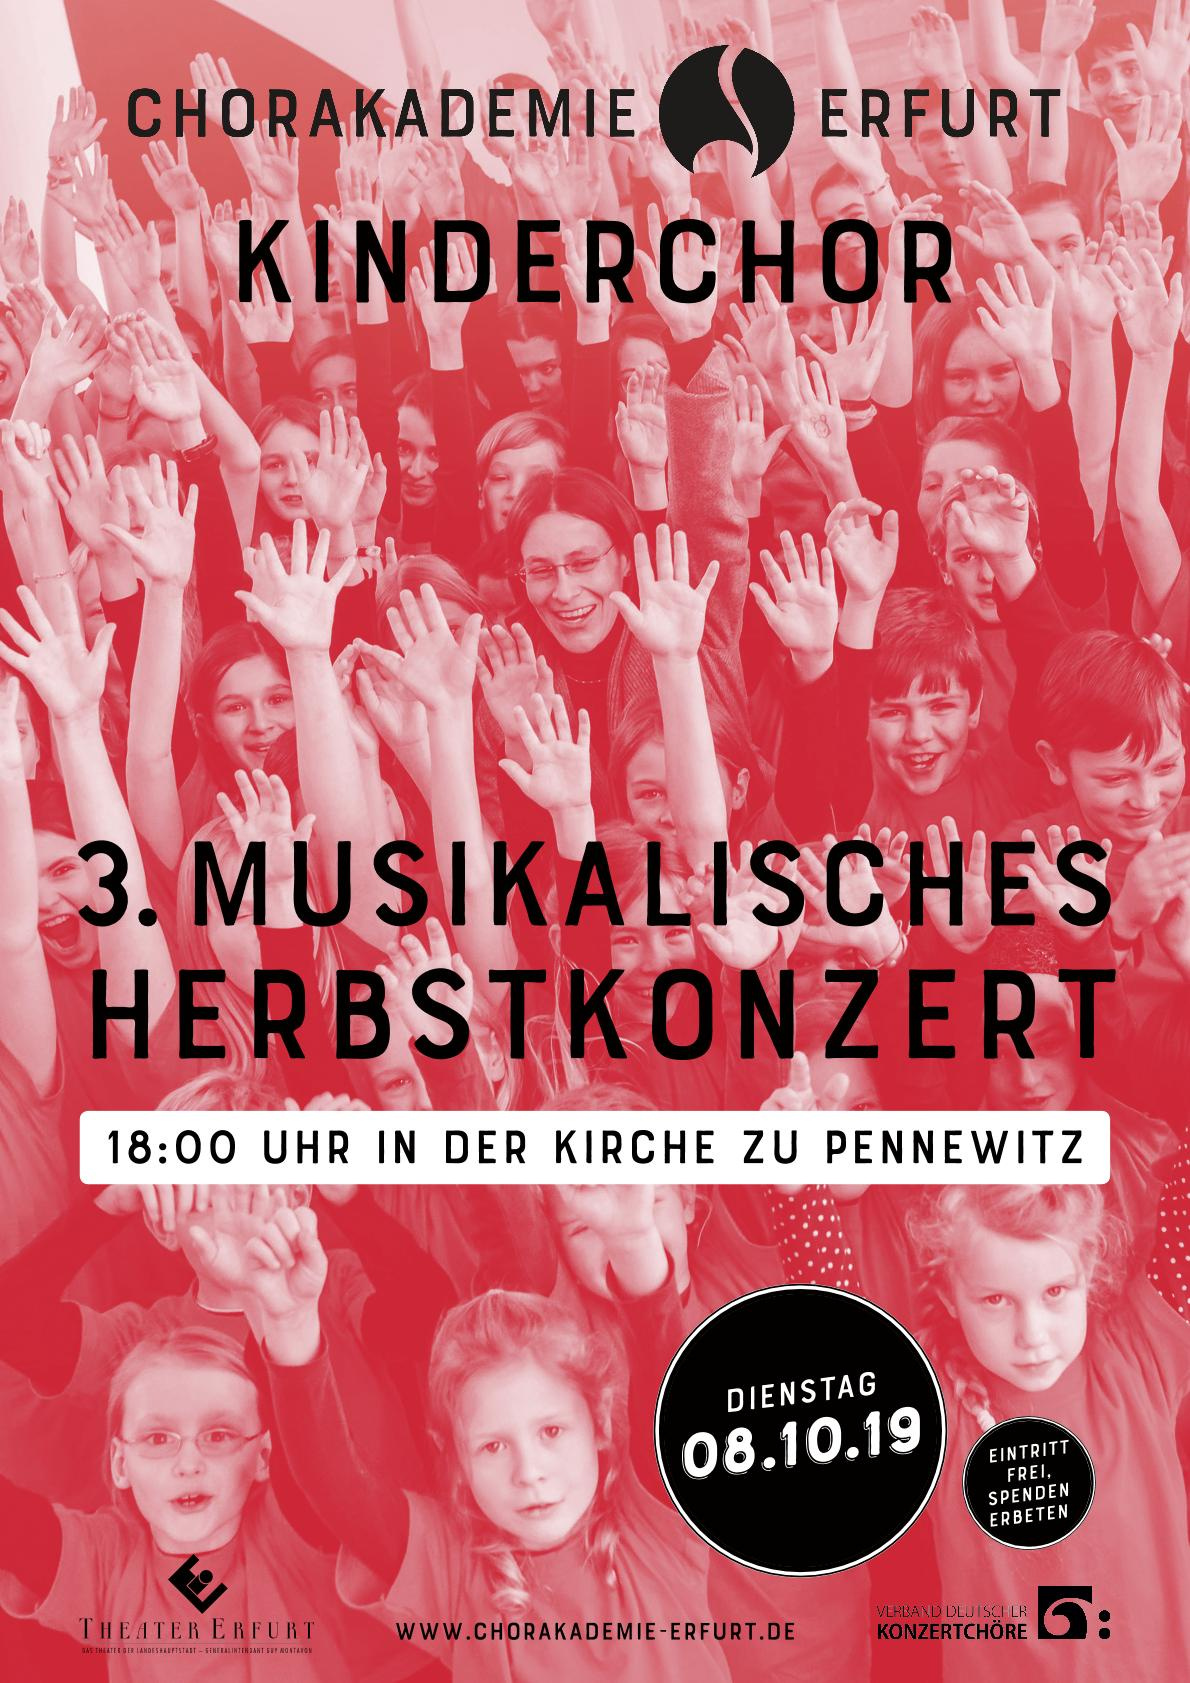 Kinderchor- Herbstkonzert in der Dorfkirche Pennewitz